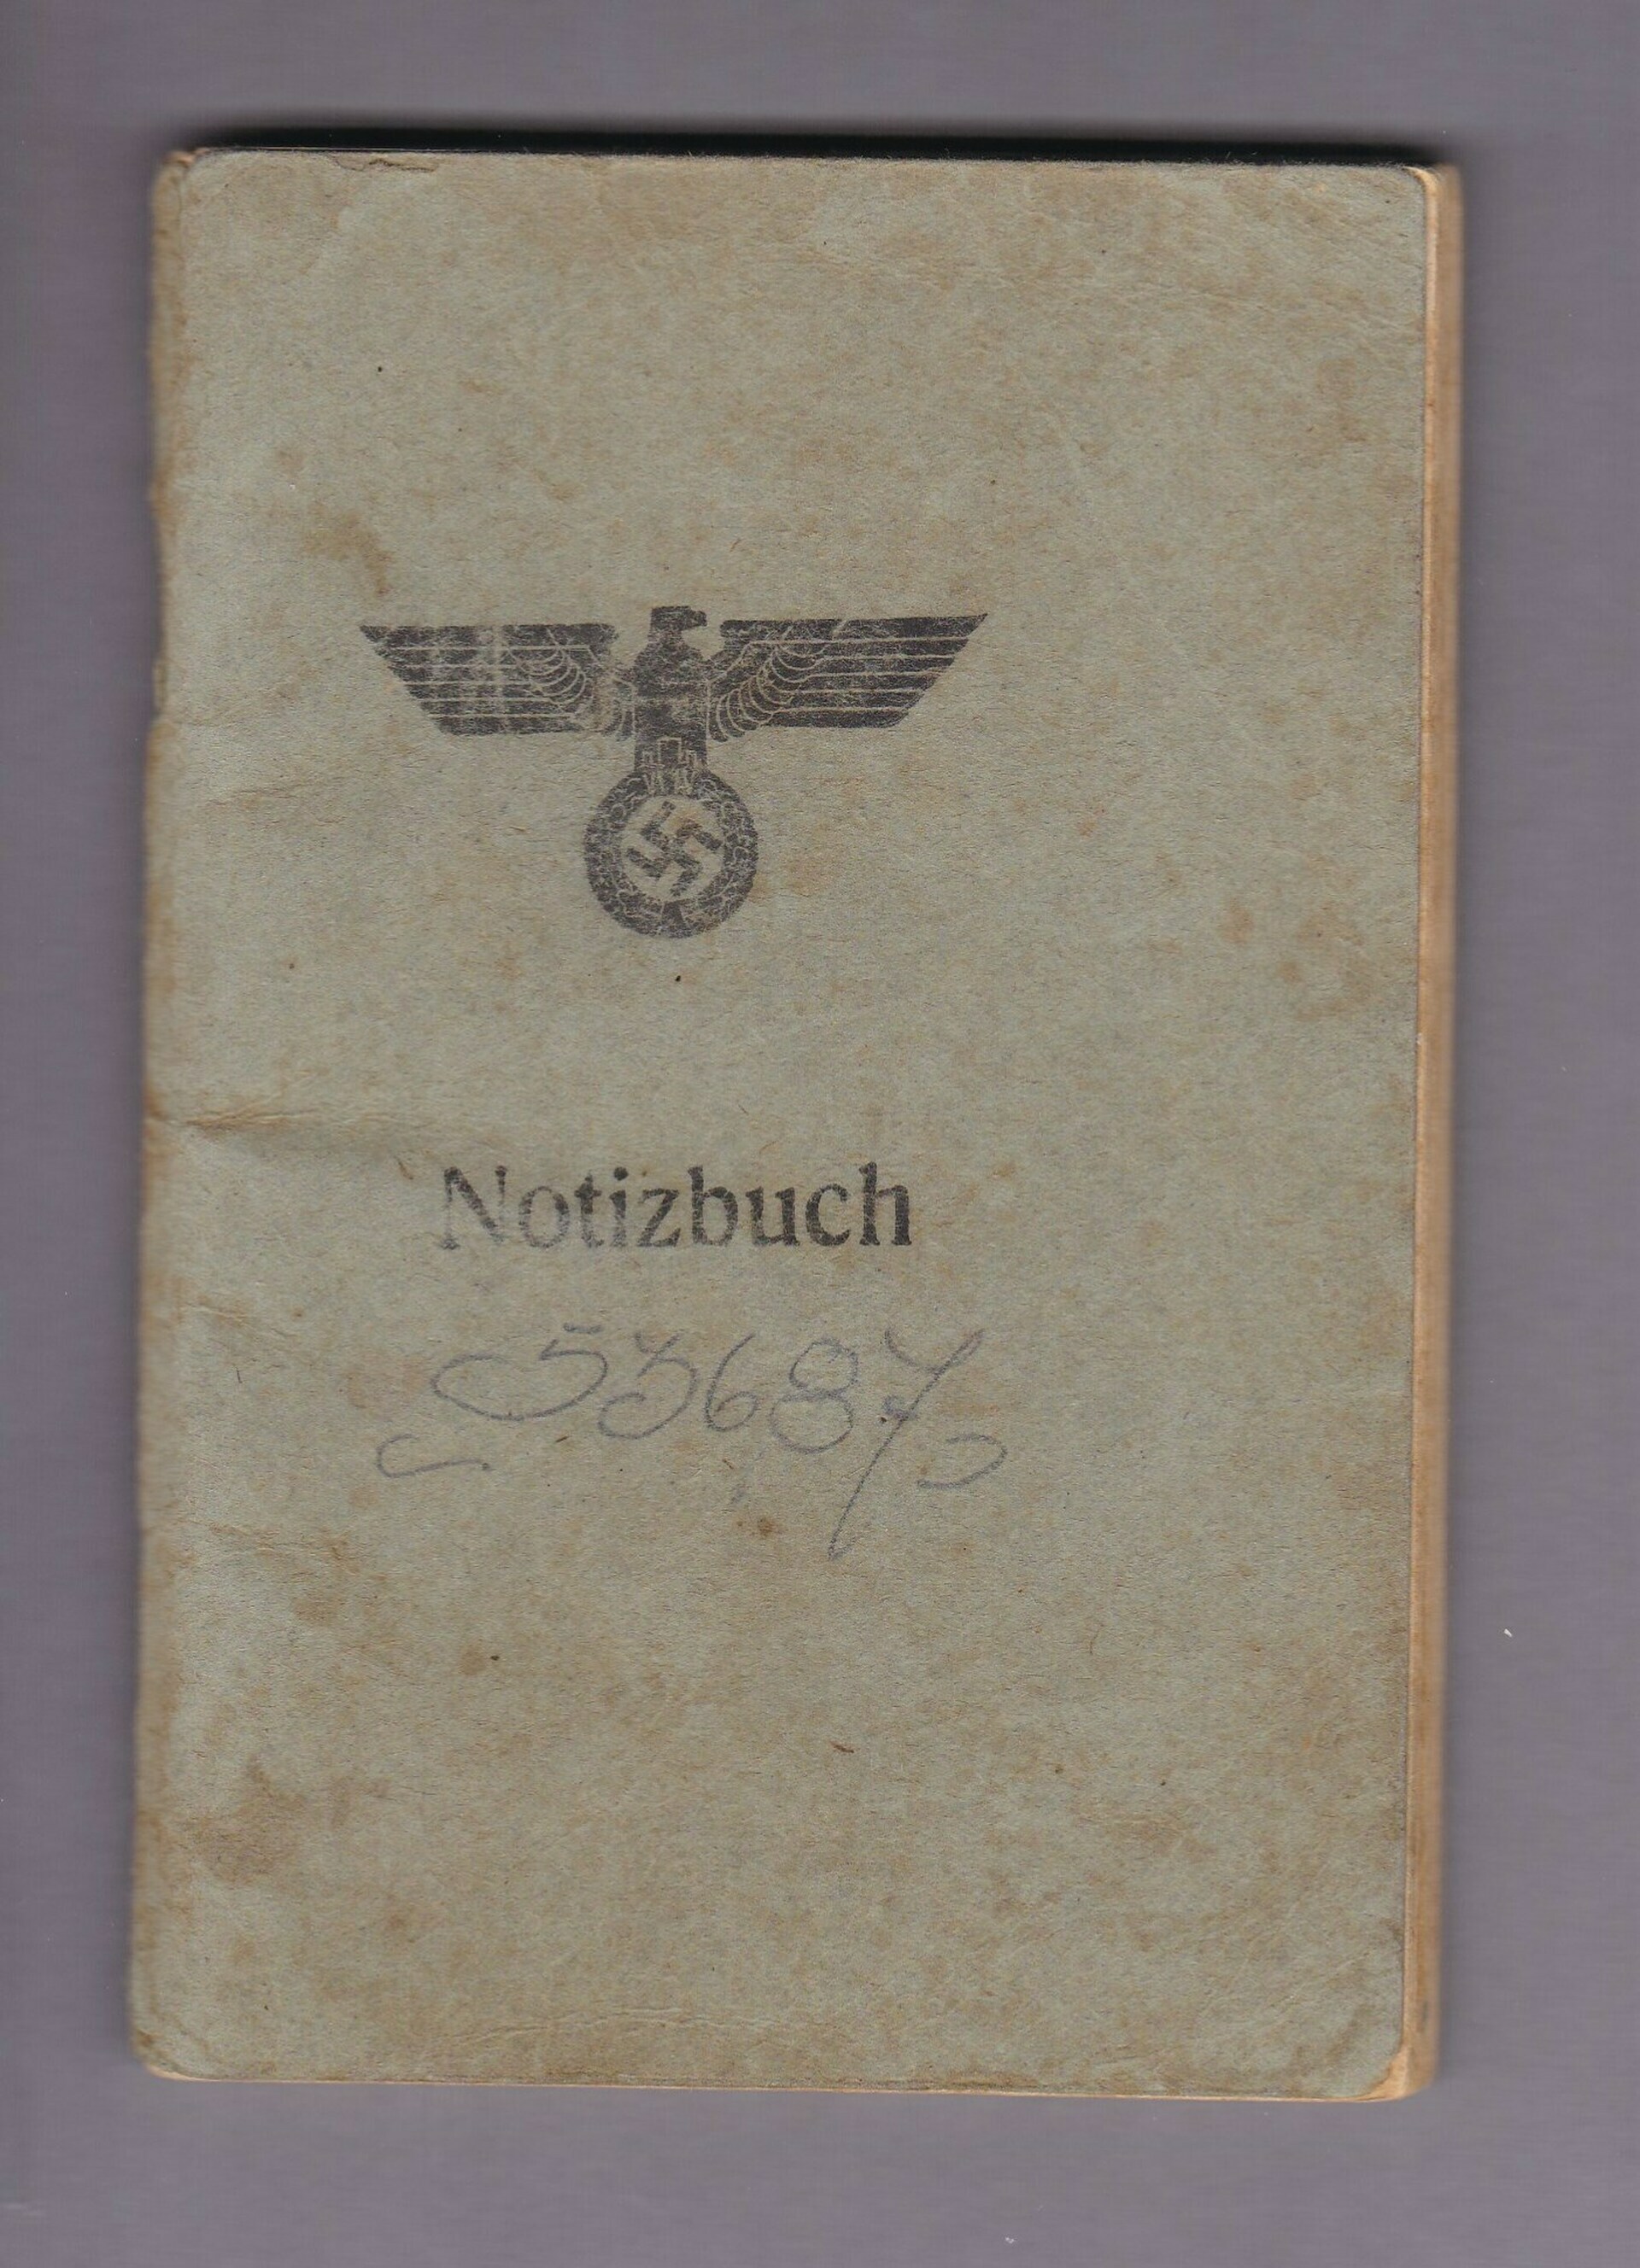 German Notebook/Calendar from 1945